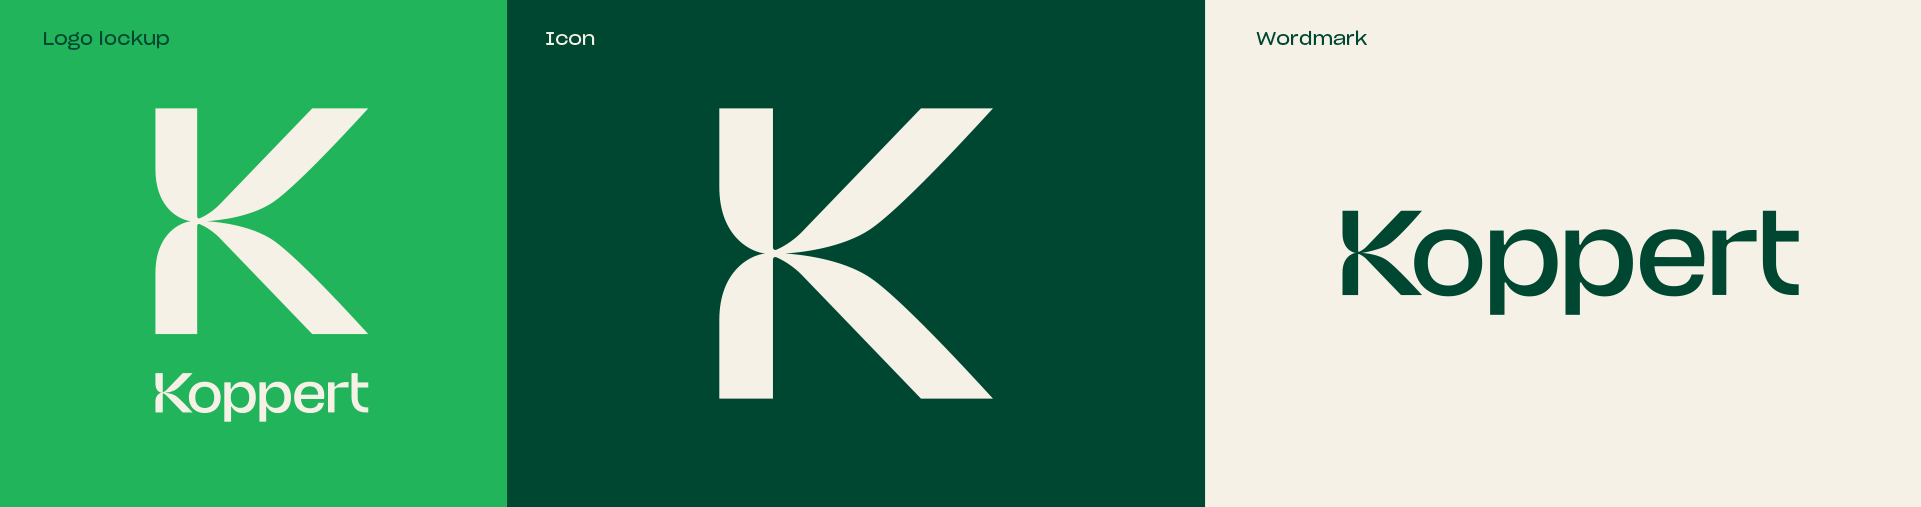 Koppert_logo